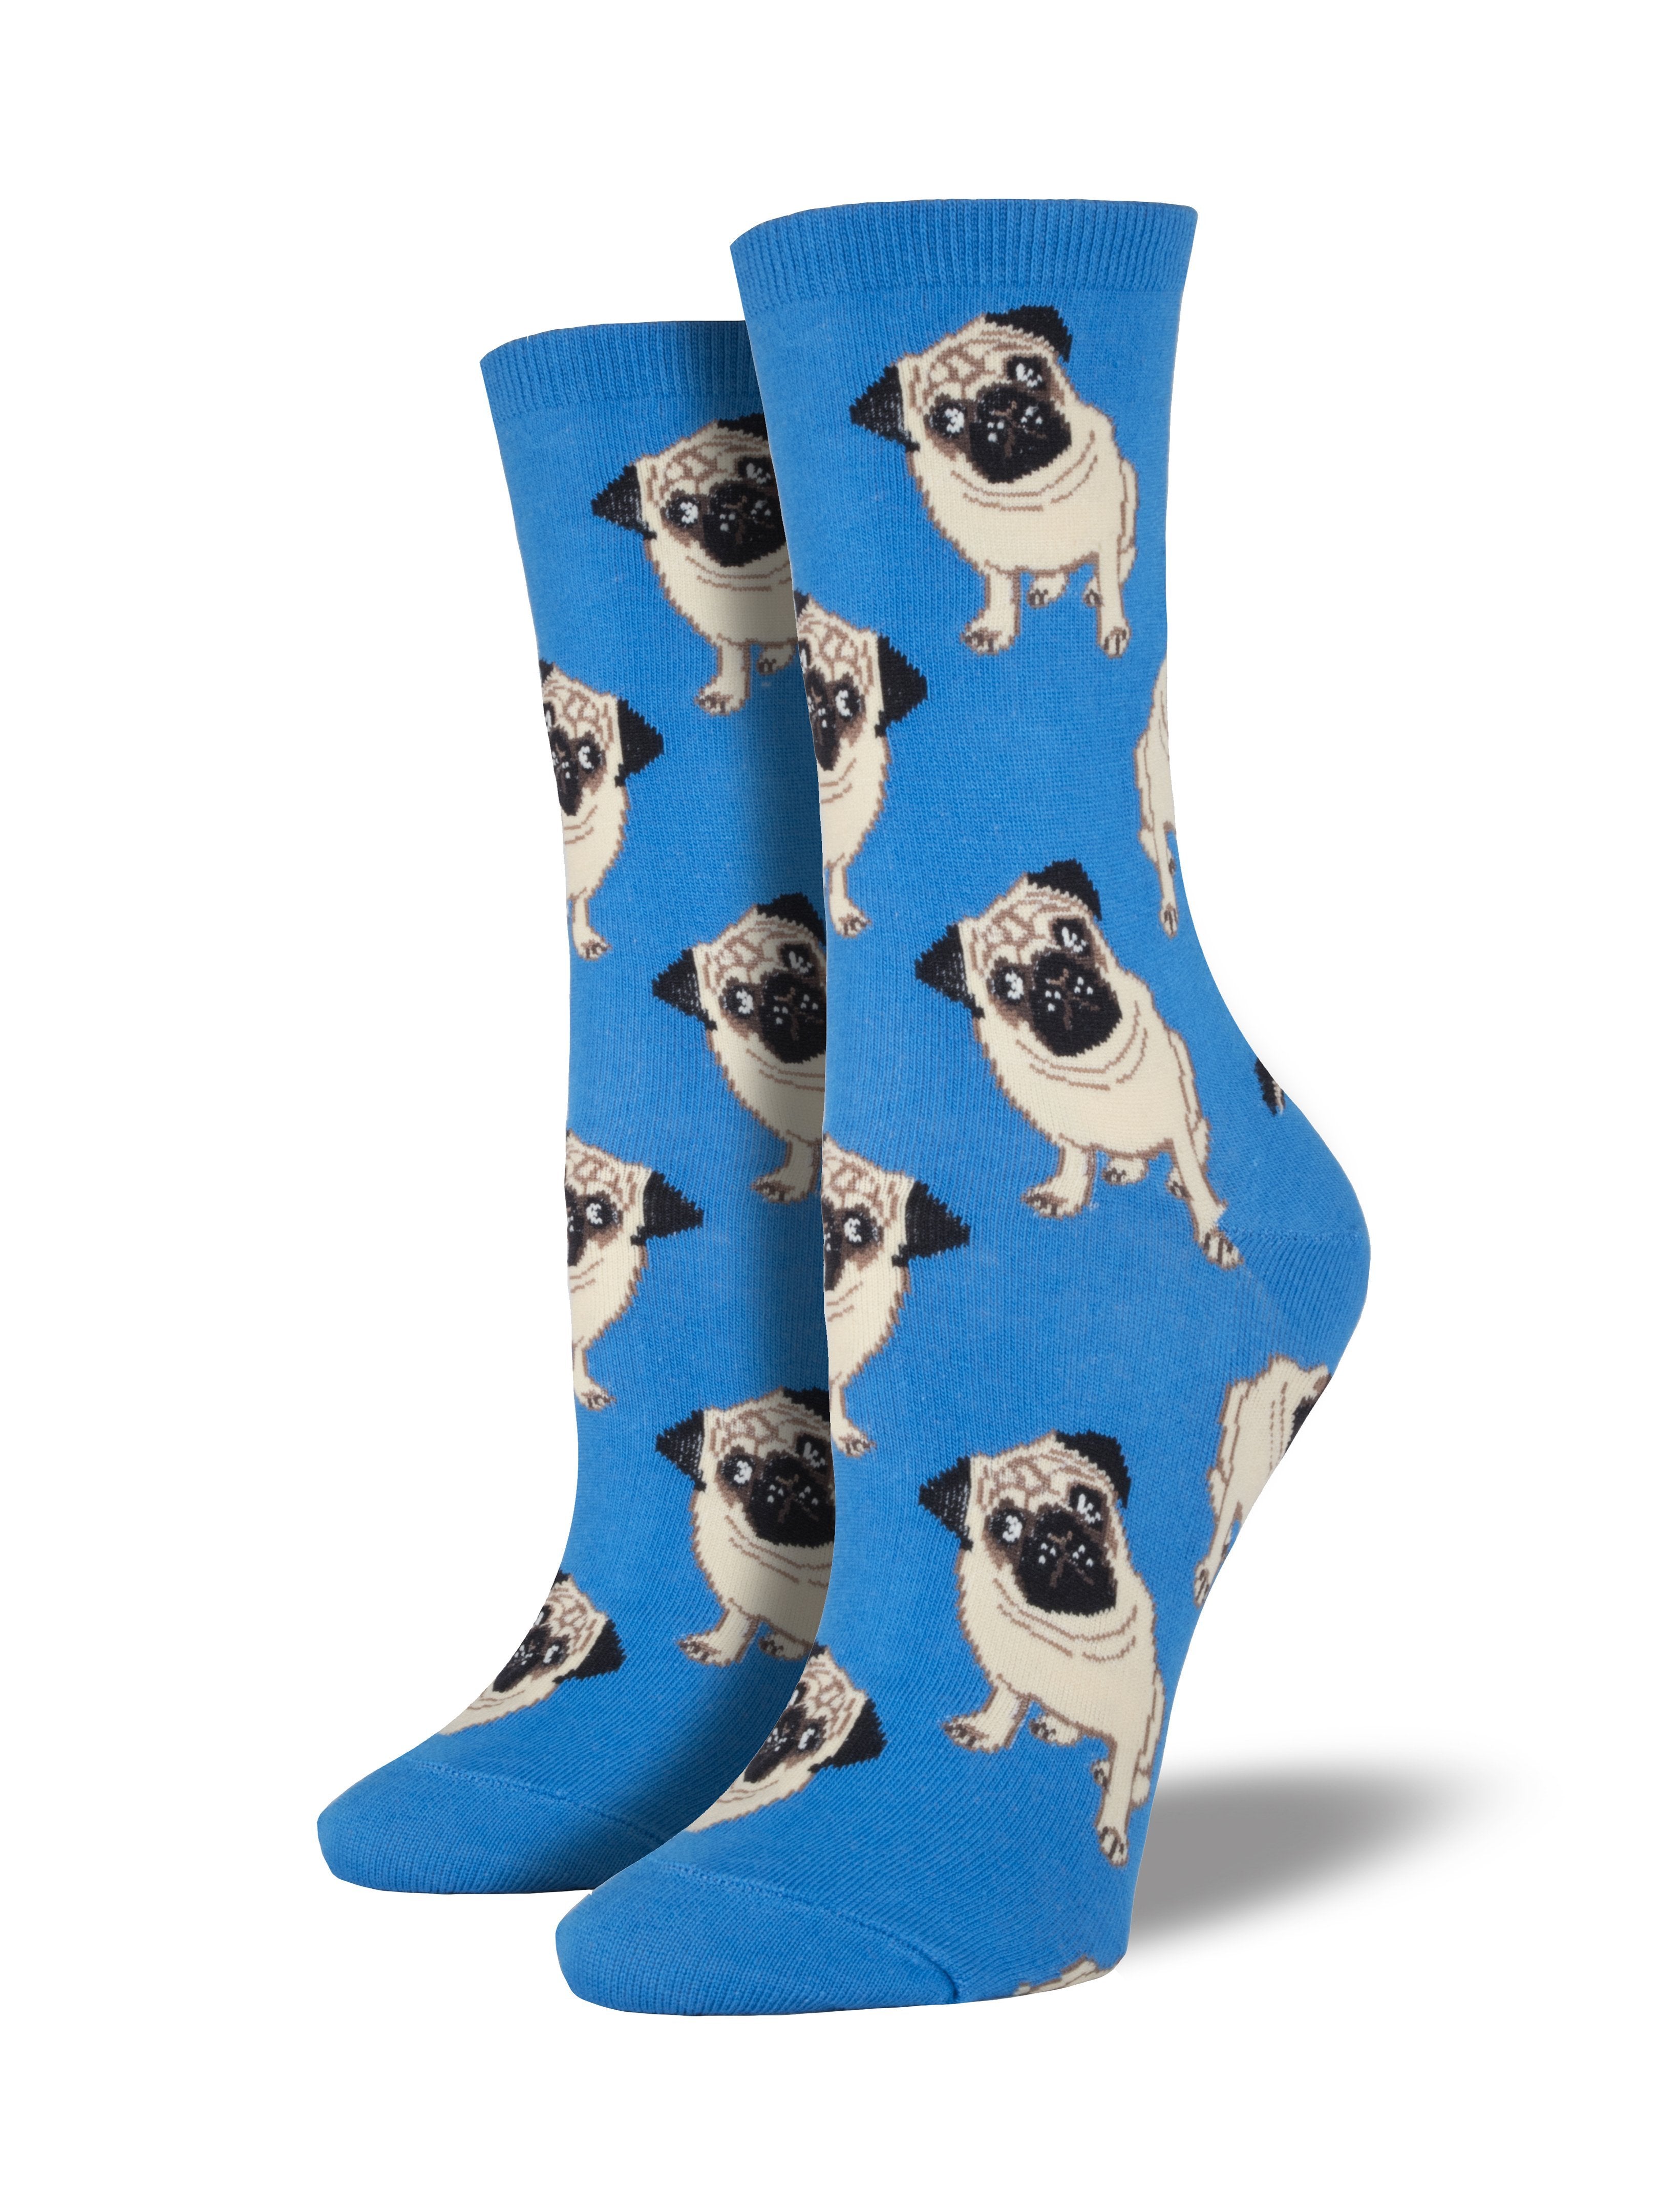 Women's "Pugs" Socks